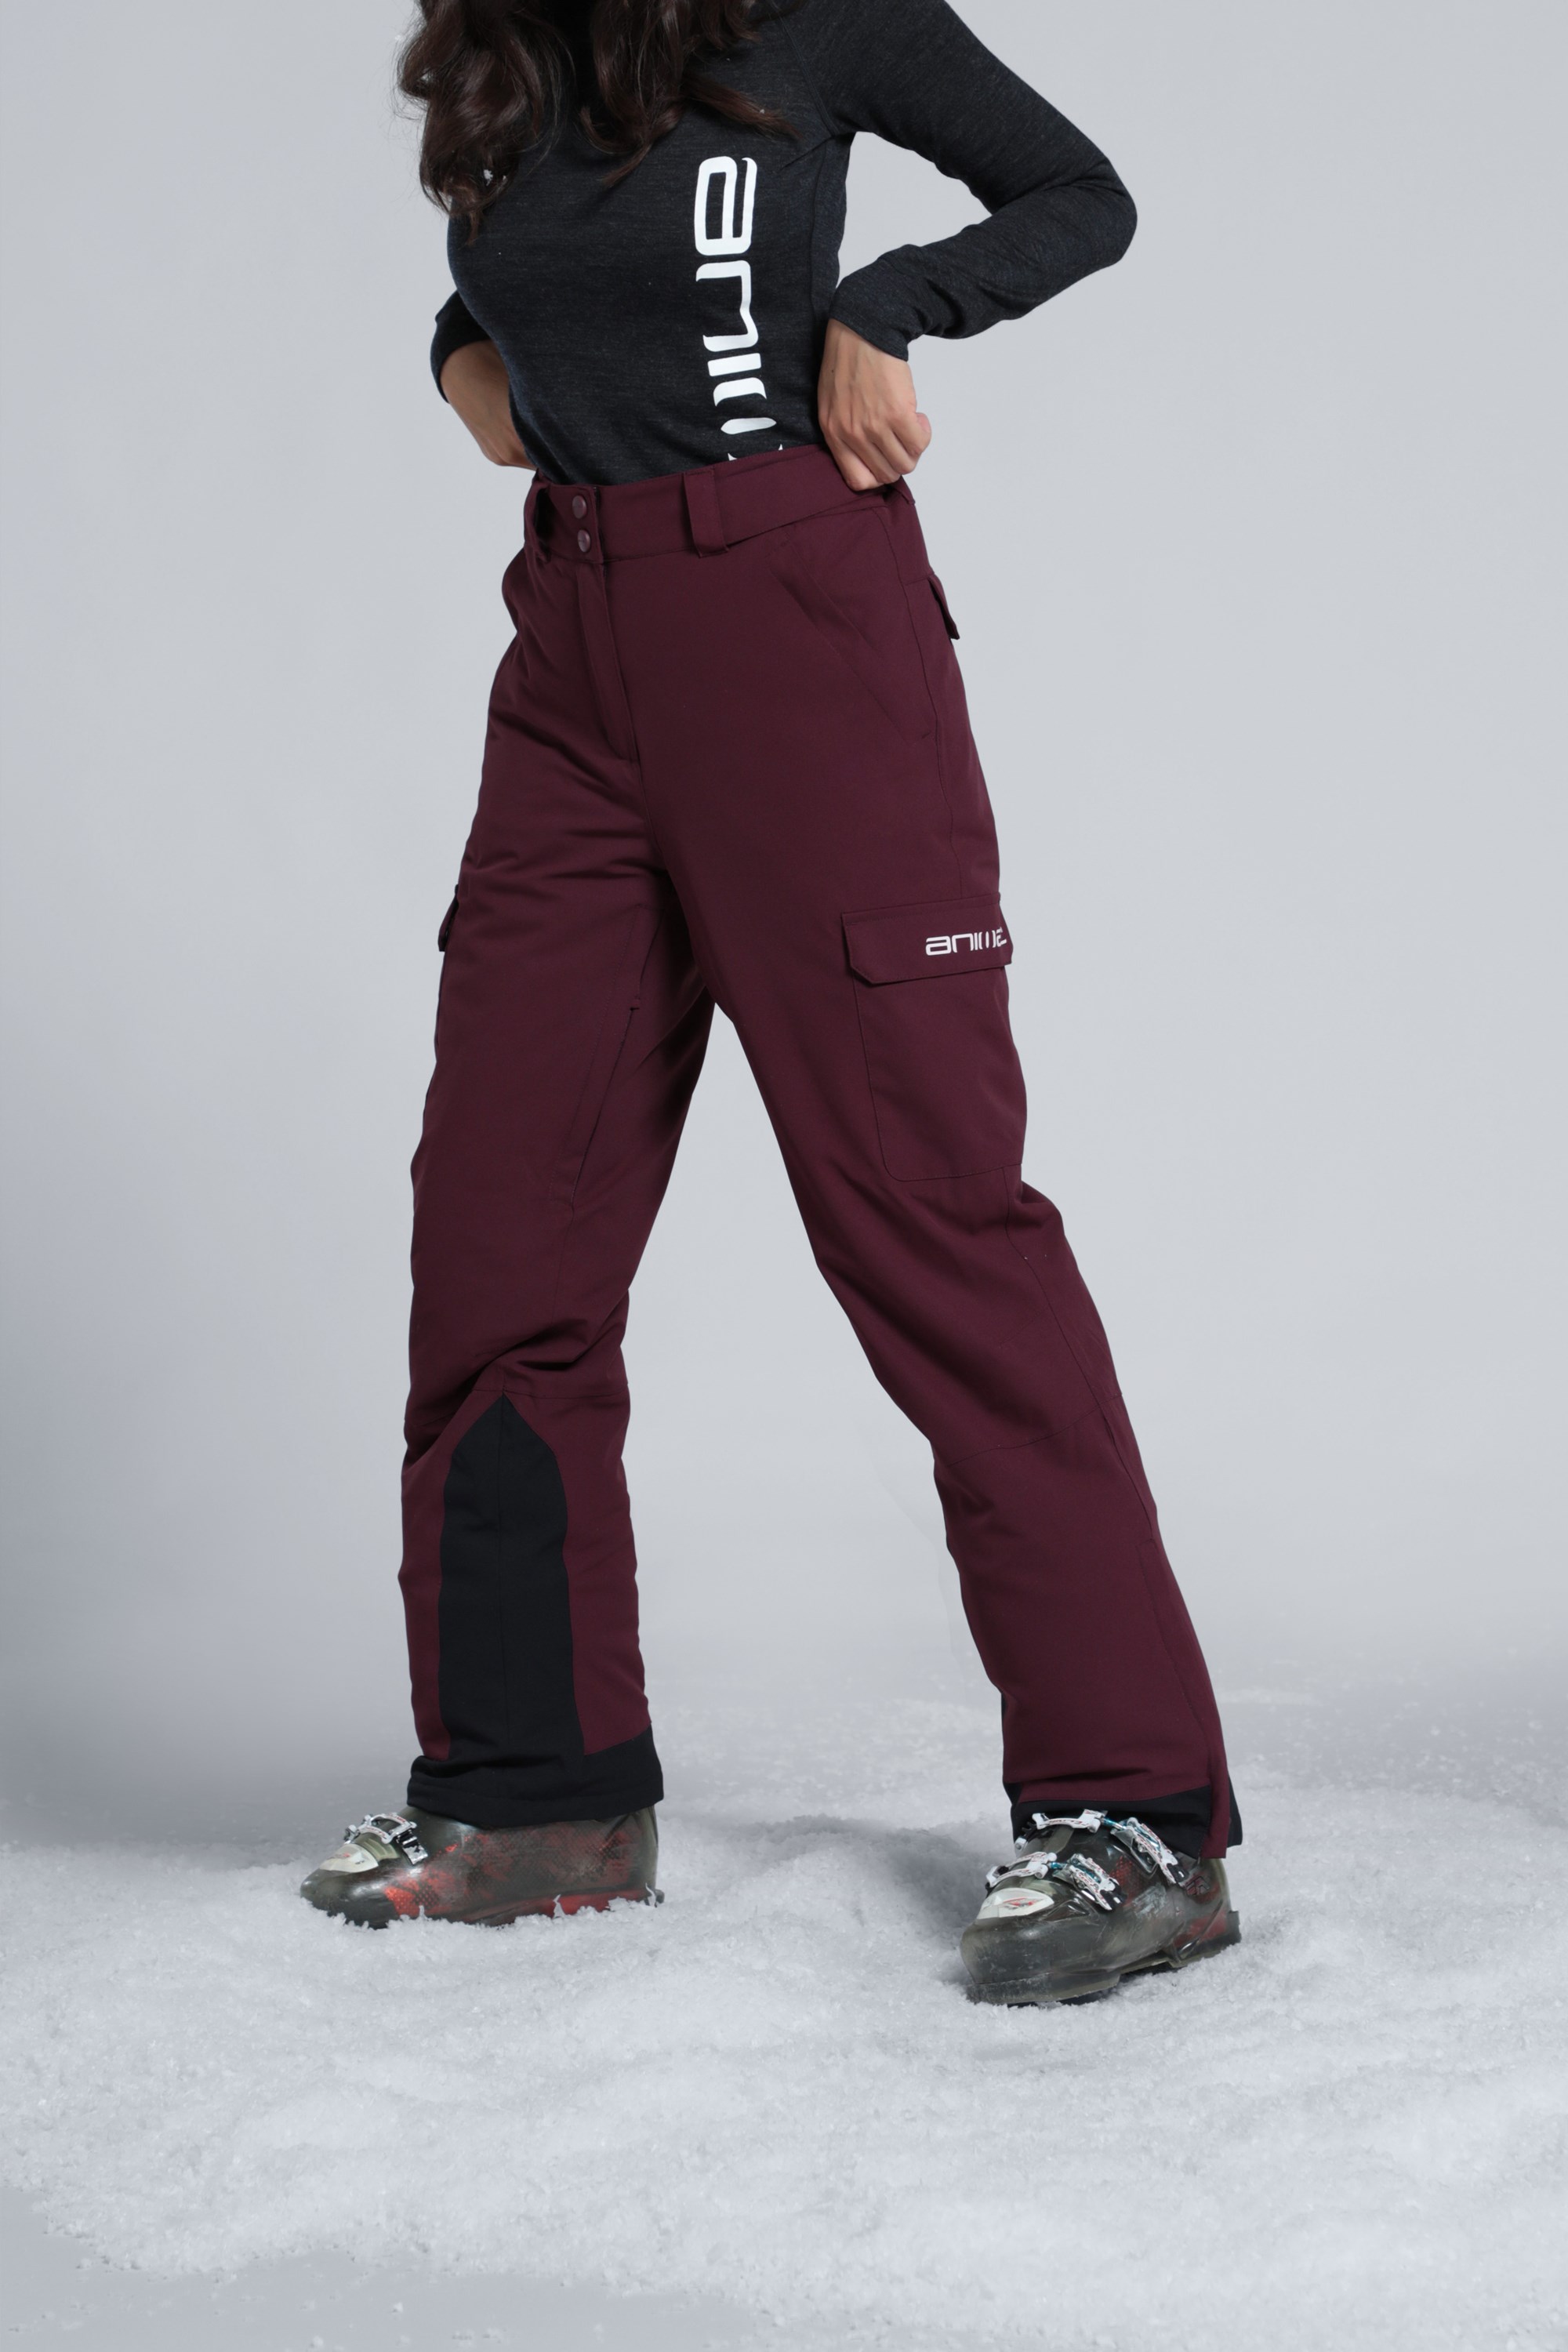 Trespass WomensLadies Galaya Waterproof Breathable Ski Trousers Pants   Outdoor Look